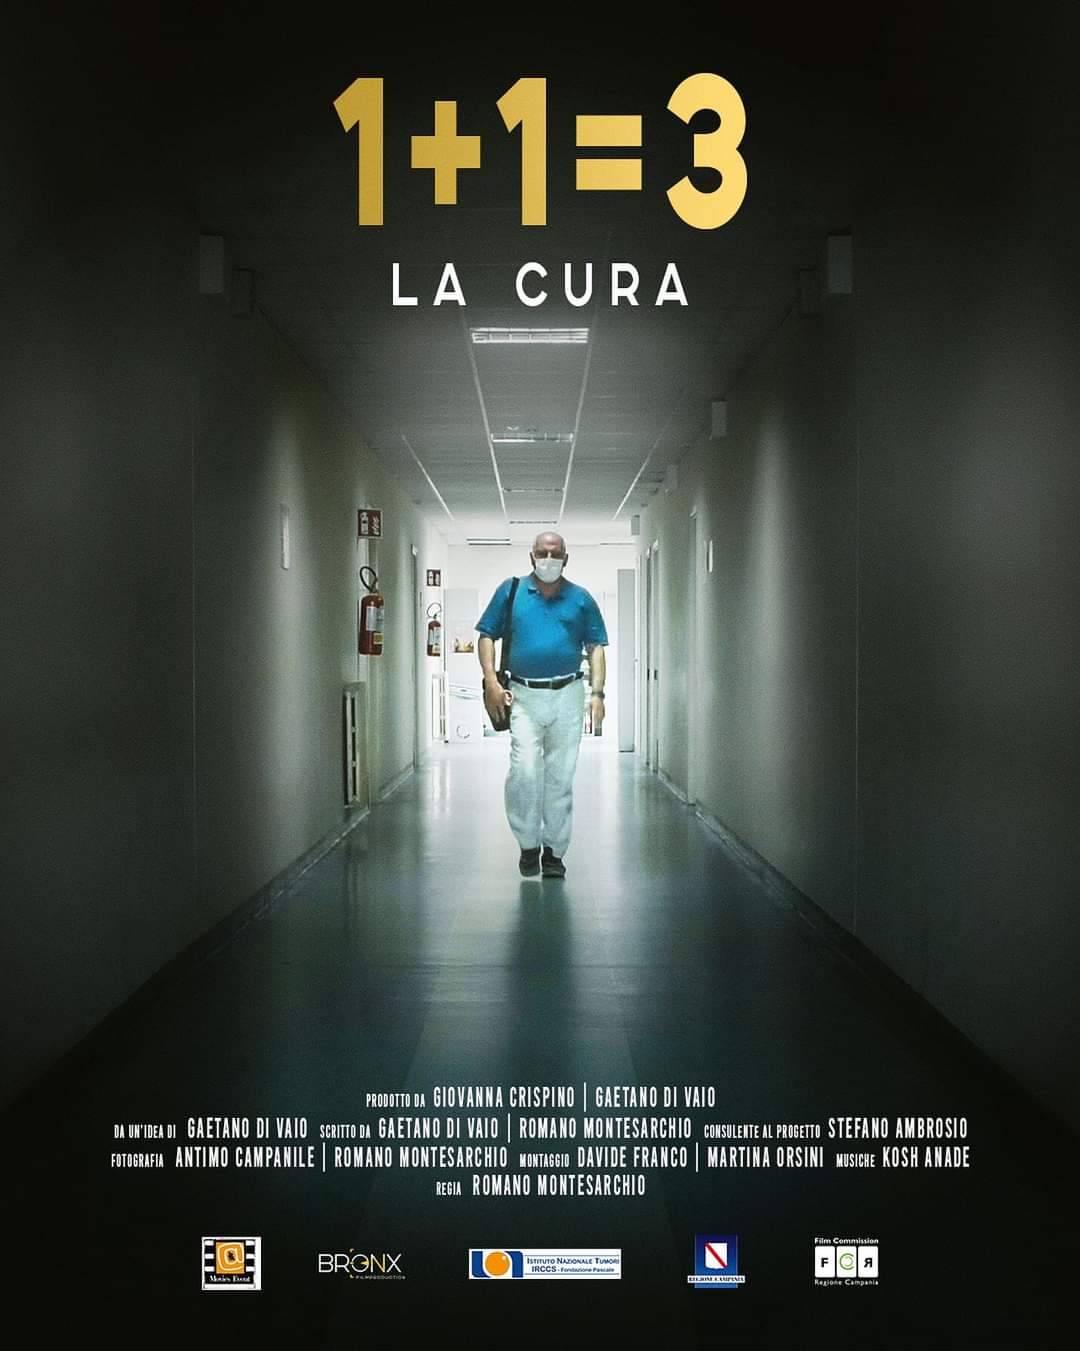 Il documentario “1+1=3”, ispirato alla vita di Paolo Ascierto, verrà proiettato in anteprima alla 24a edizione del Napoli Film Festival.